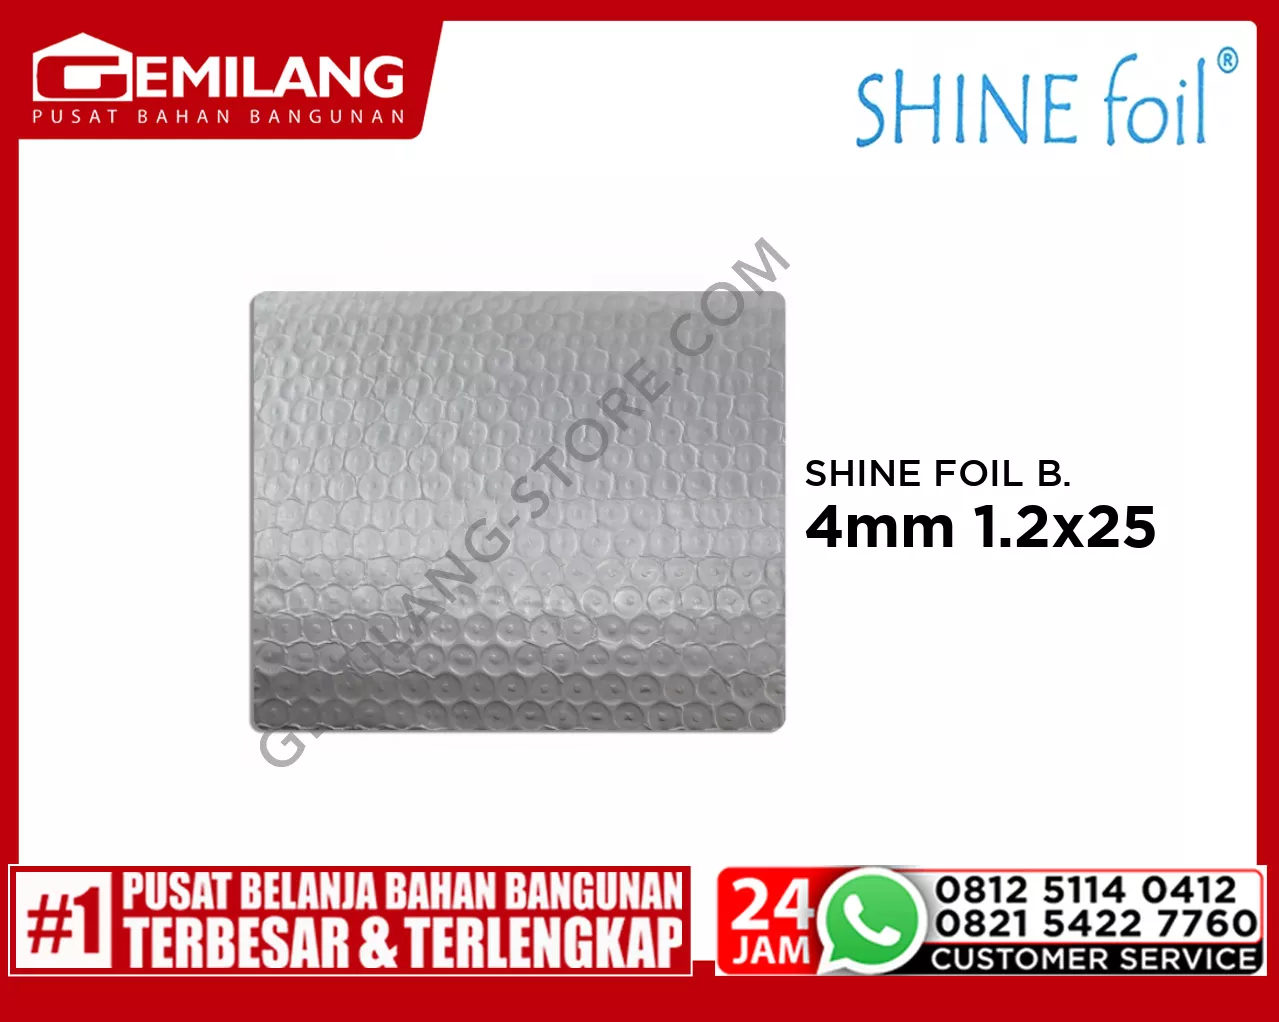 SHINE FOIL BUBBLE PREMIUM 4mm 1.2x25m